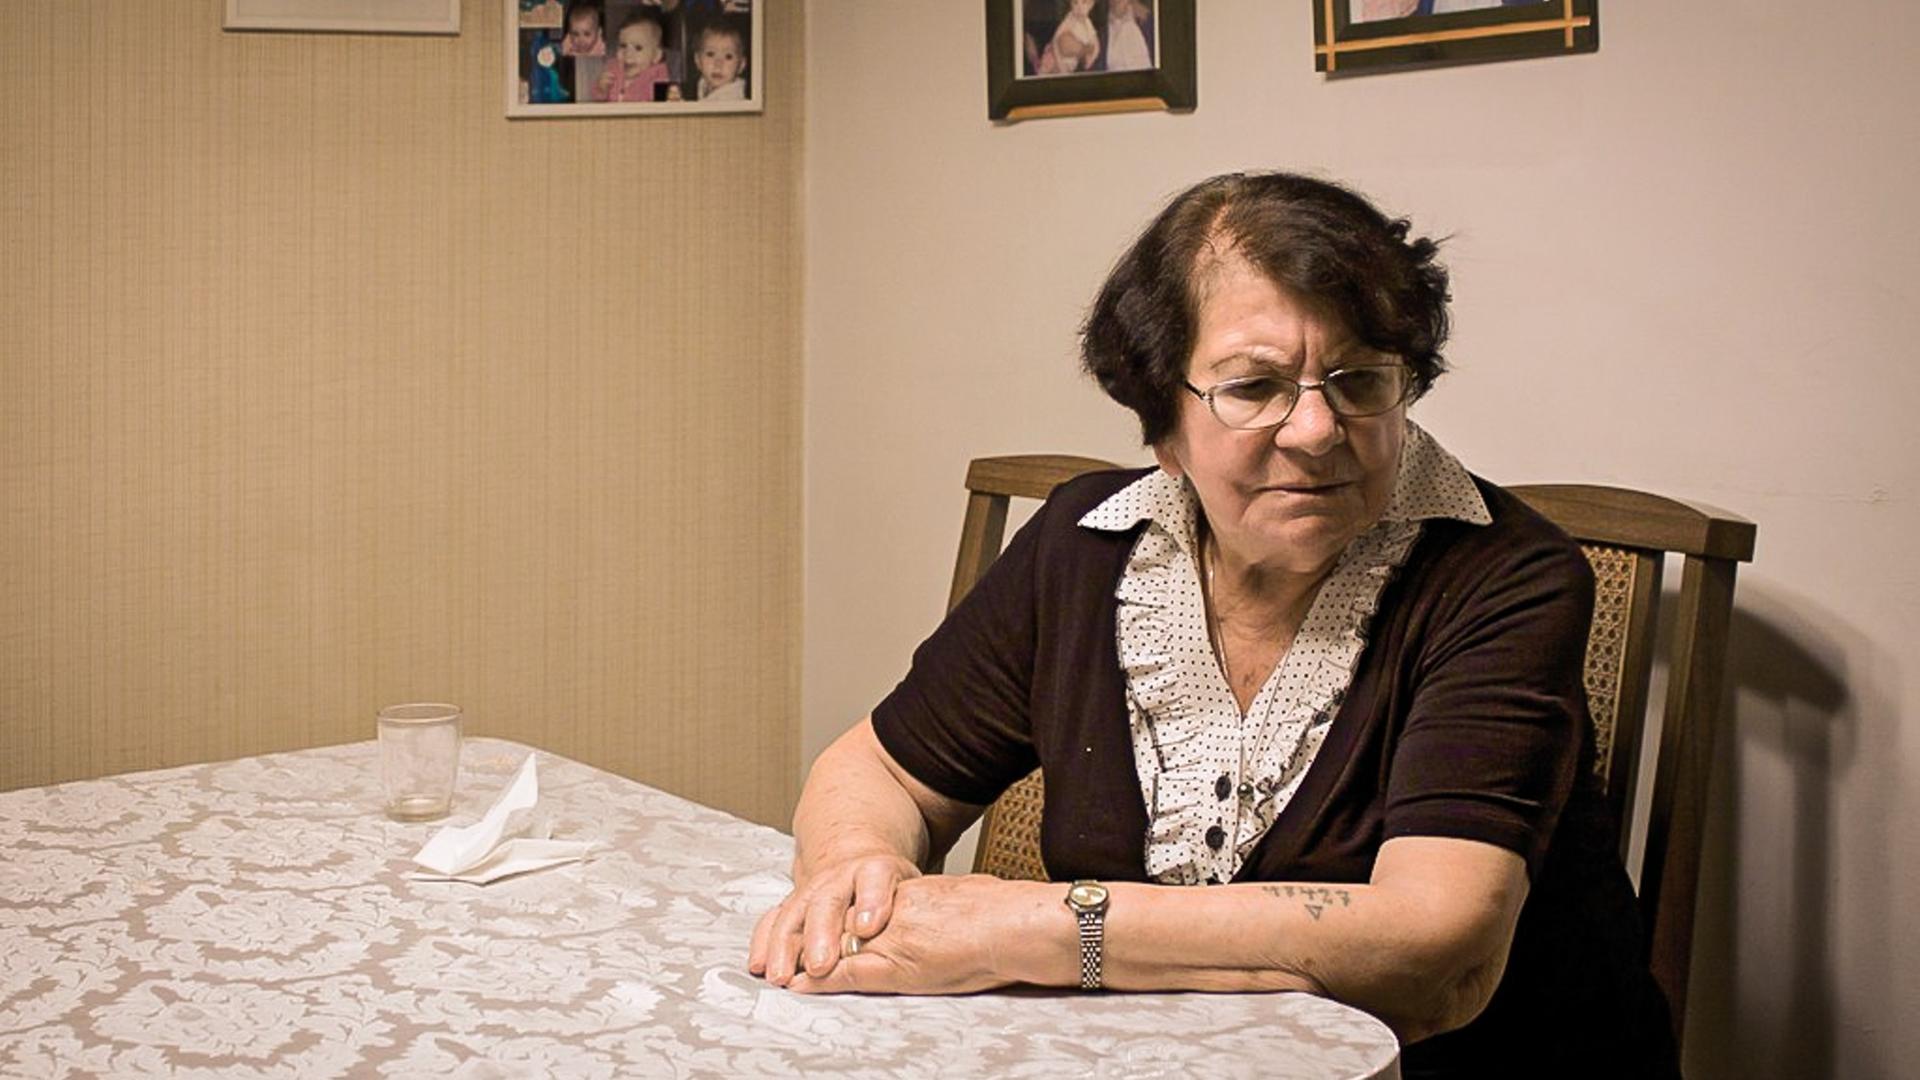 Die Shoah-Überlebende Frieda Kliger sitzt an ihrem Küchentisch und blickt nachdenklich. Auf Ihrem linken Arm ist eine tätowierte Nummer erkennbar.